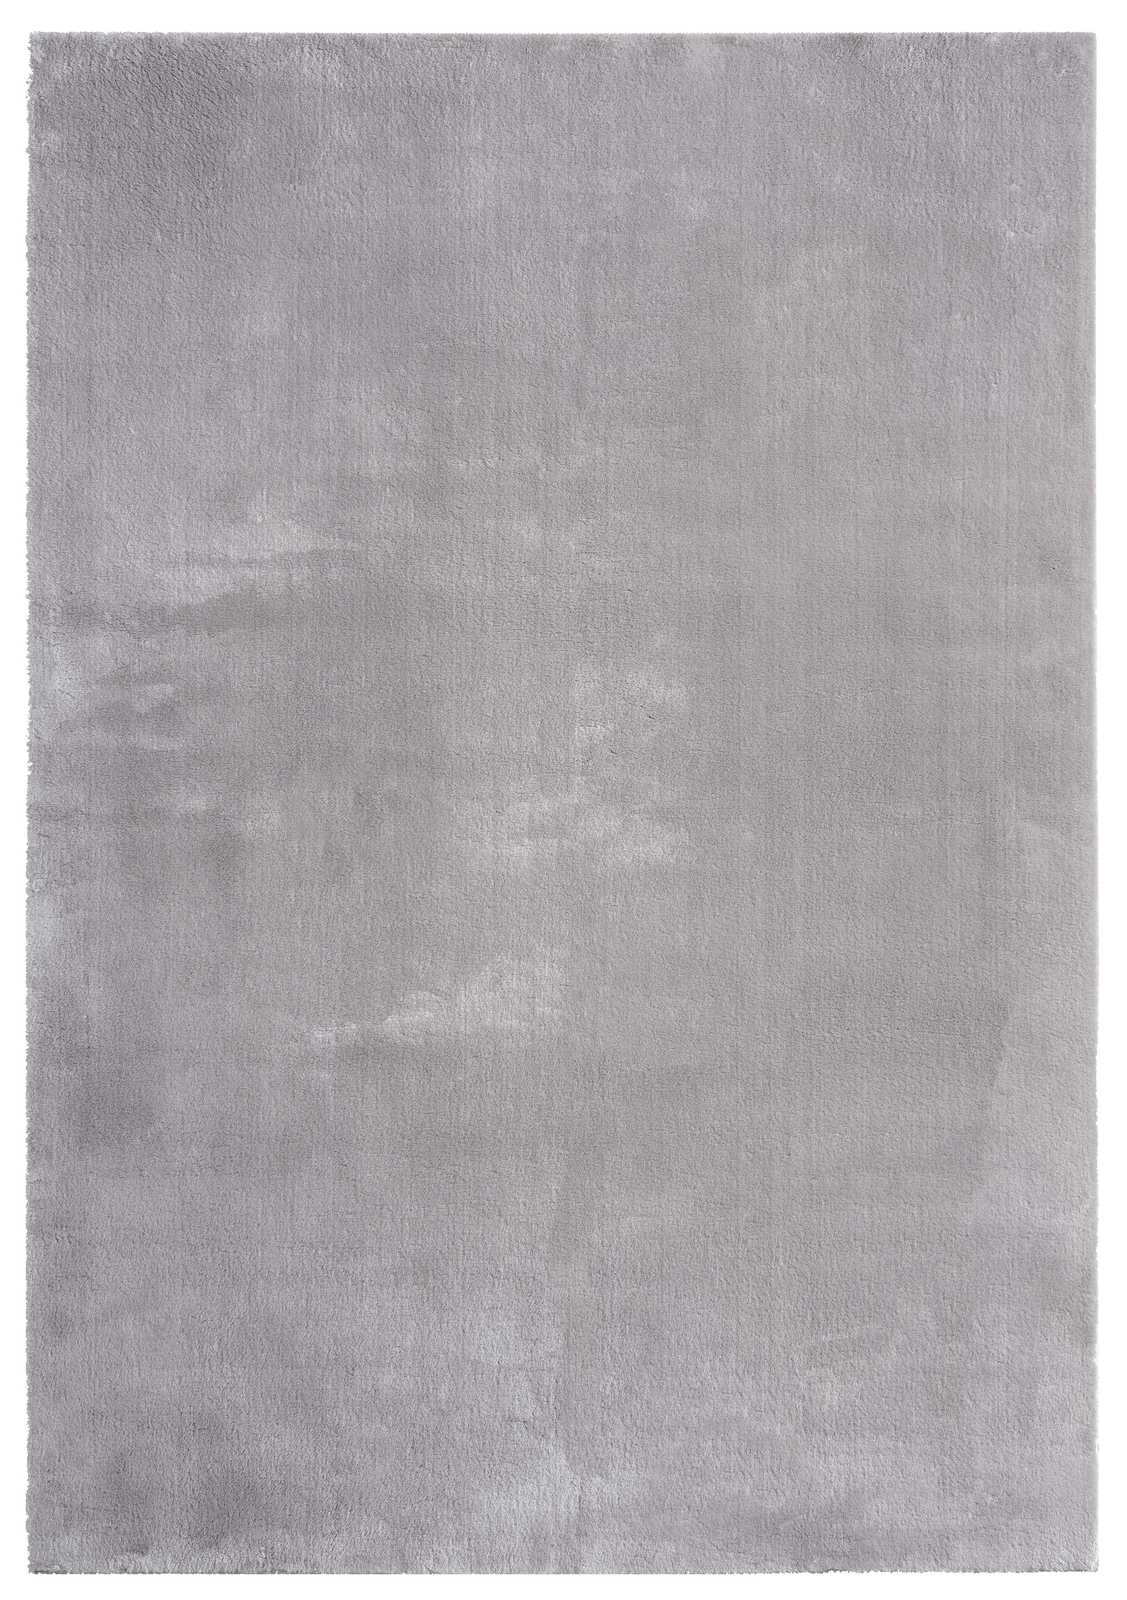             Fijn hoogpolig tapijt in grijs - 290 x 200 cm
        